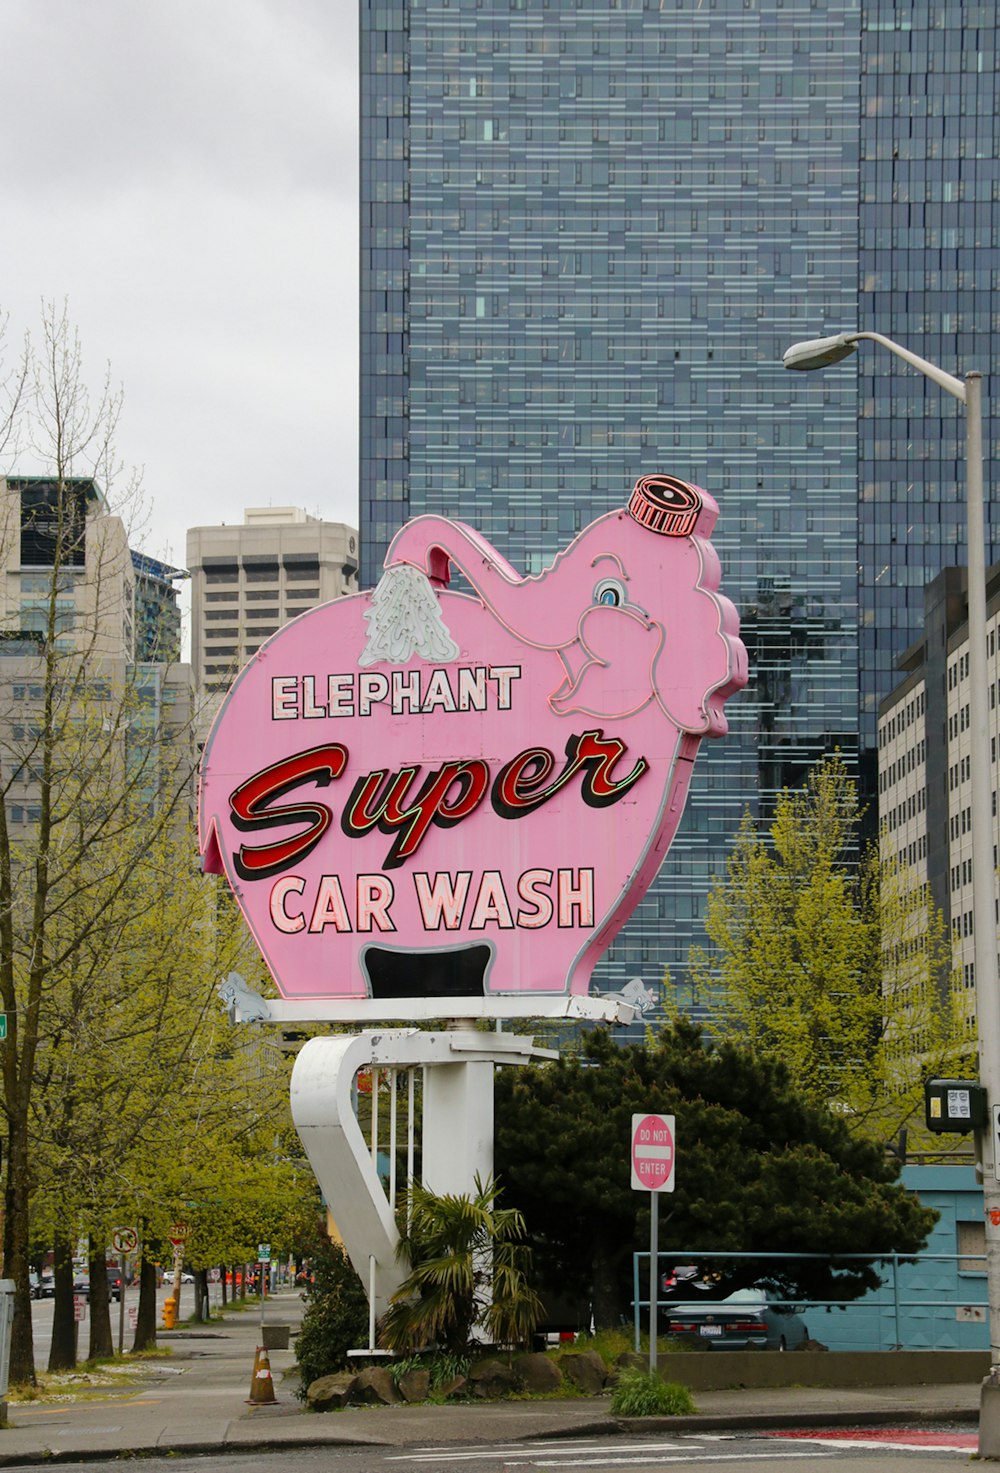 Elephant Super Car Wash signage